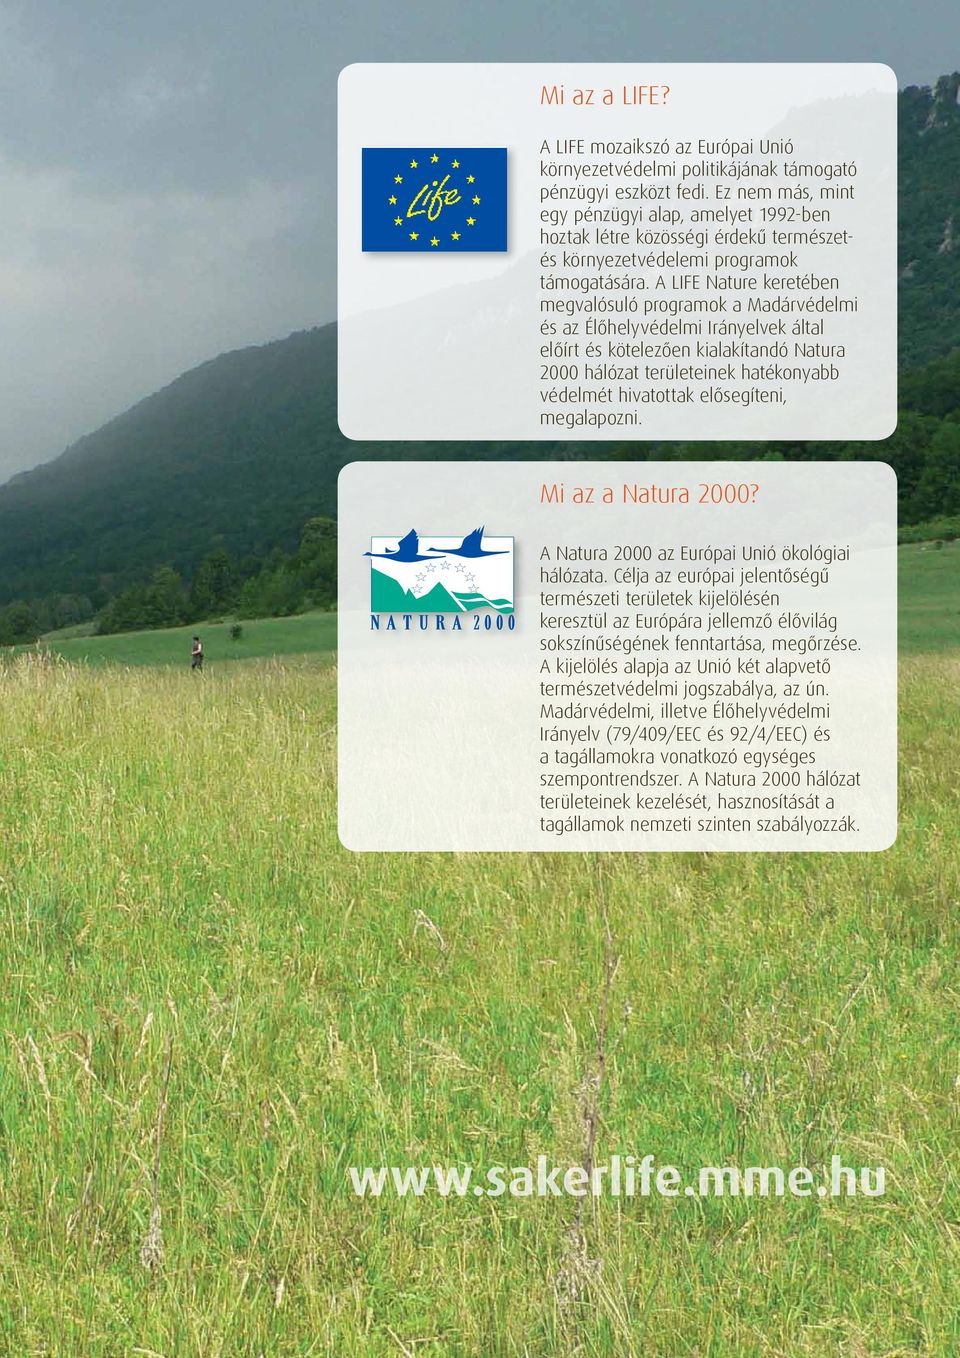 A LIFE Nature keretében megvalósuló programok a Madárvédelmi és az Élőhelyvédelmi Irányelvek által előírt és kötelezően kialakítandó Natura 2000 hálózat területeinek hatékonyabb védelmét hivatottak